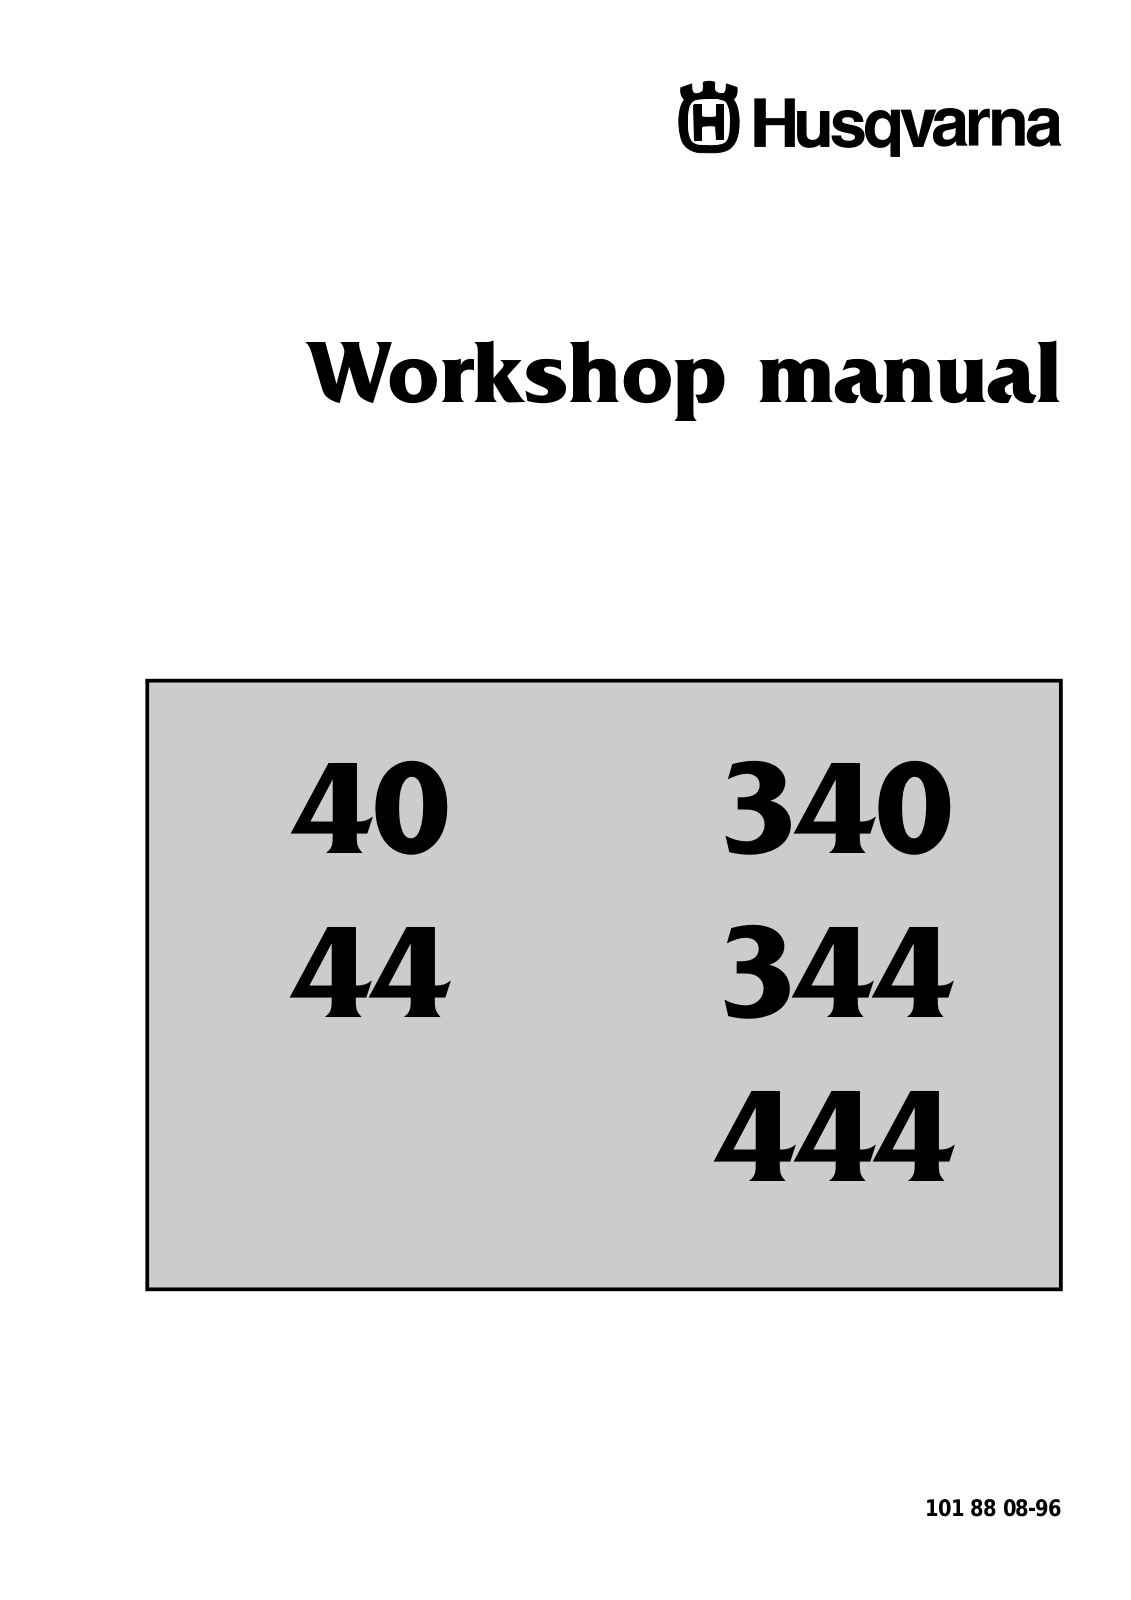 Husqvarna 444 User Manual